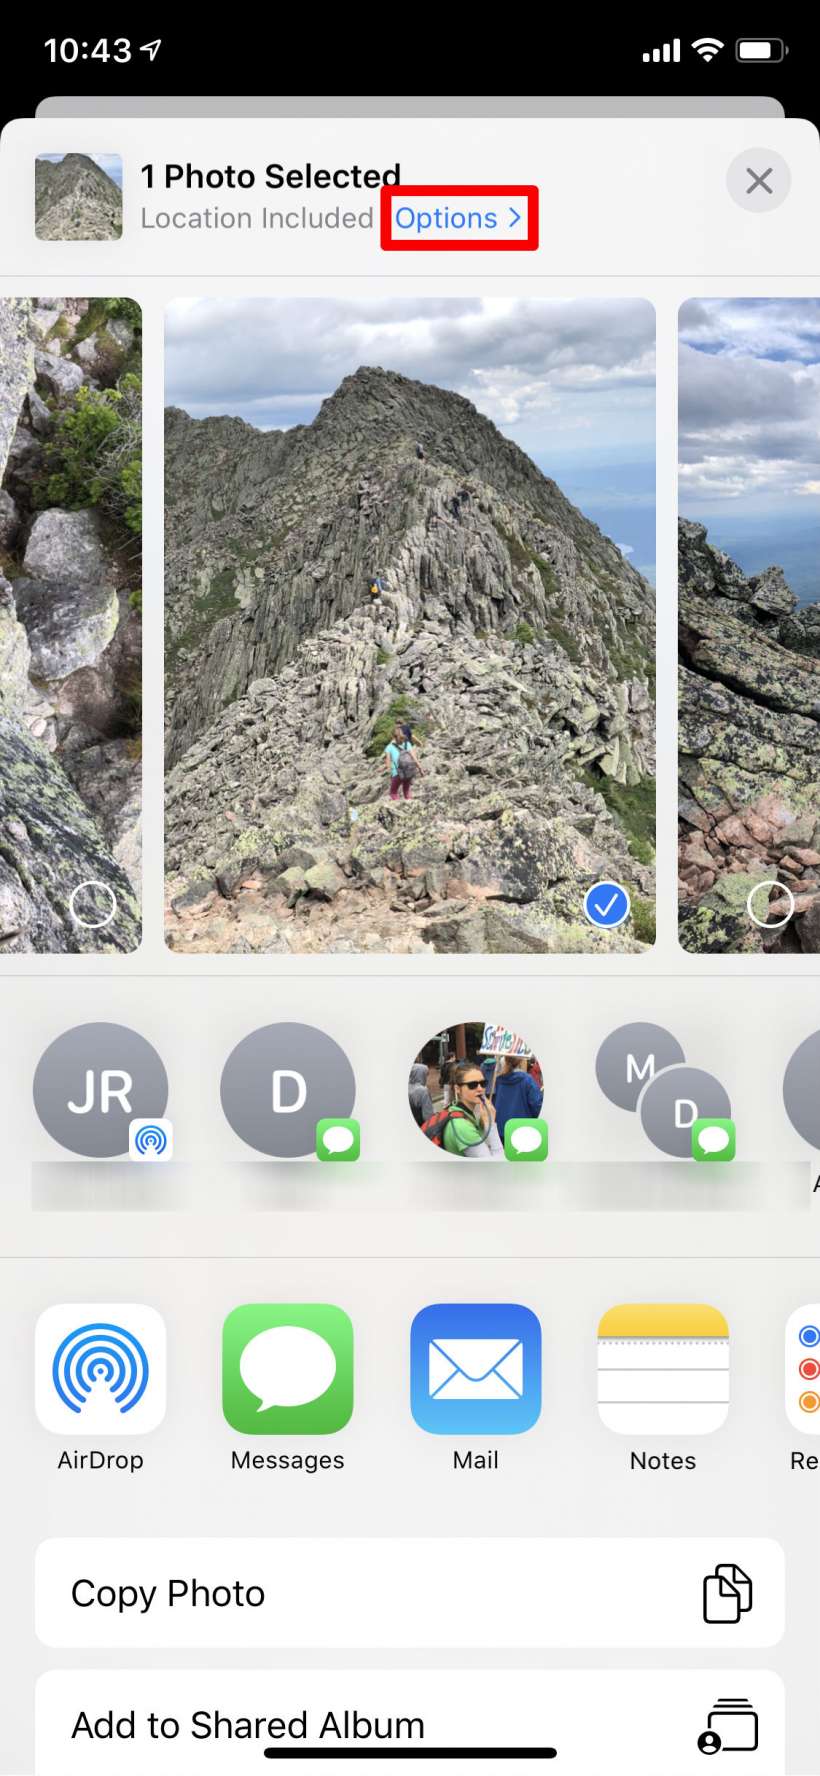 Cara mengirim foto tanpa data lokasi di iPhone dan iPad.